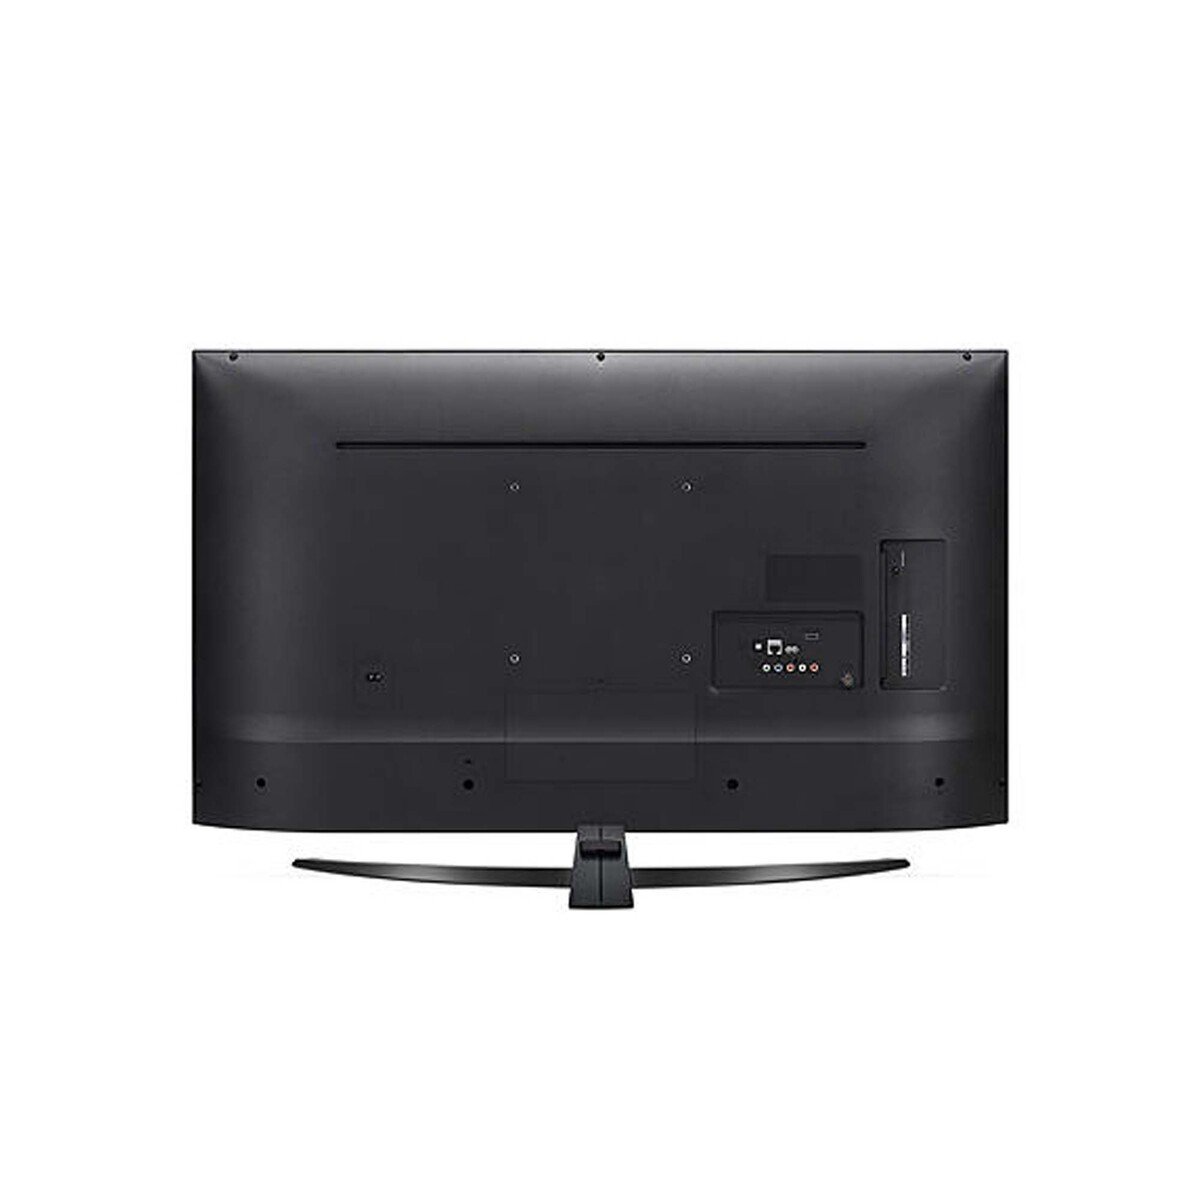 LG 4K Ultra HD Smart LED TV 55UM7450PVA 55"